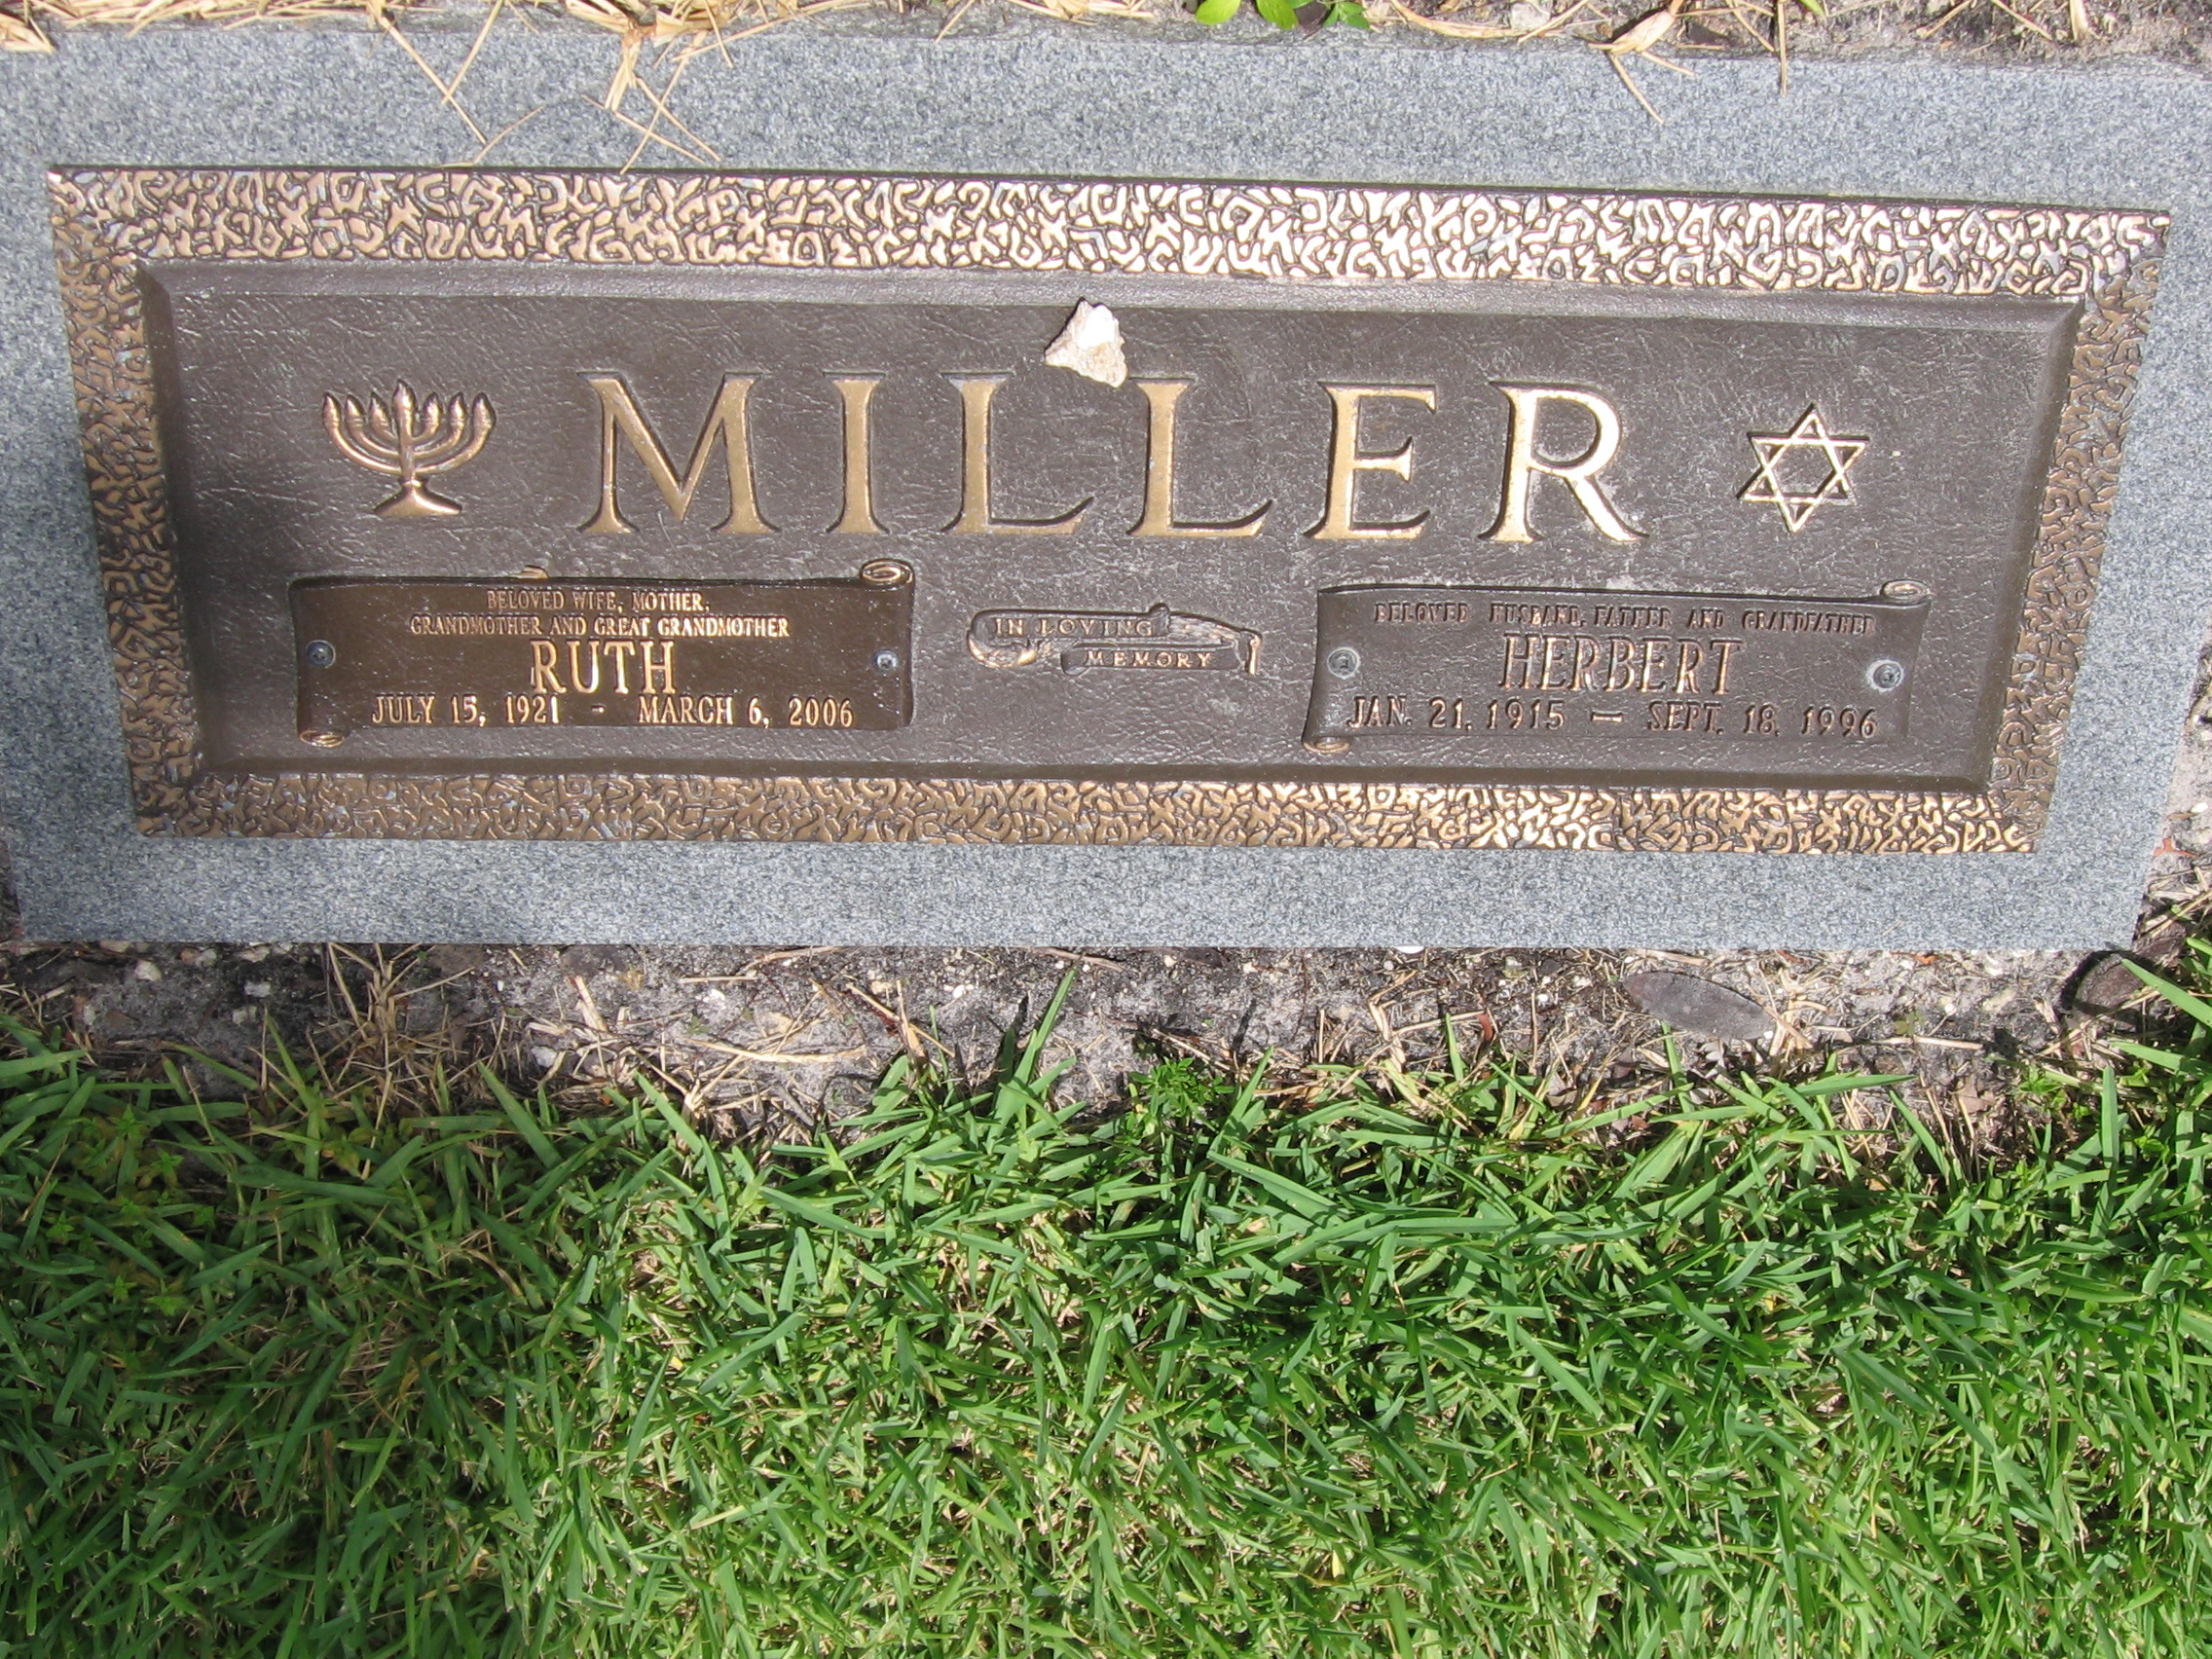 Herbert Miller